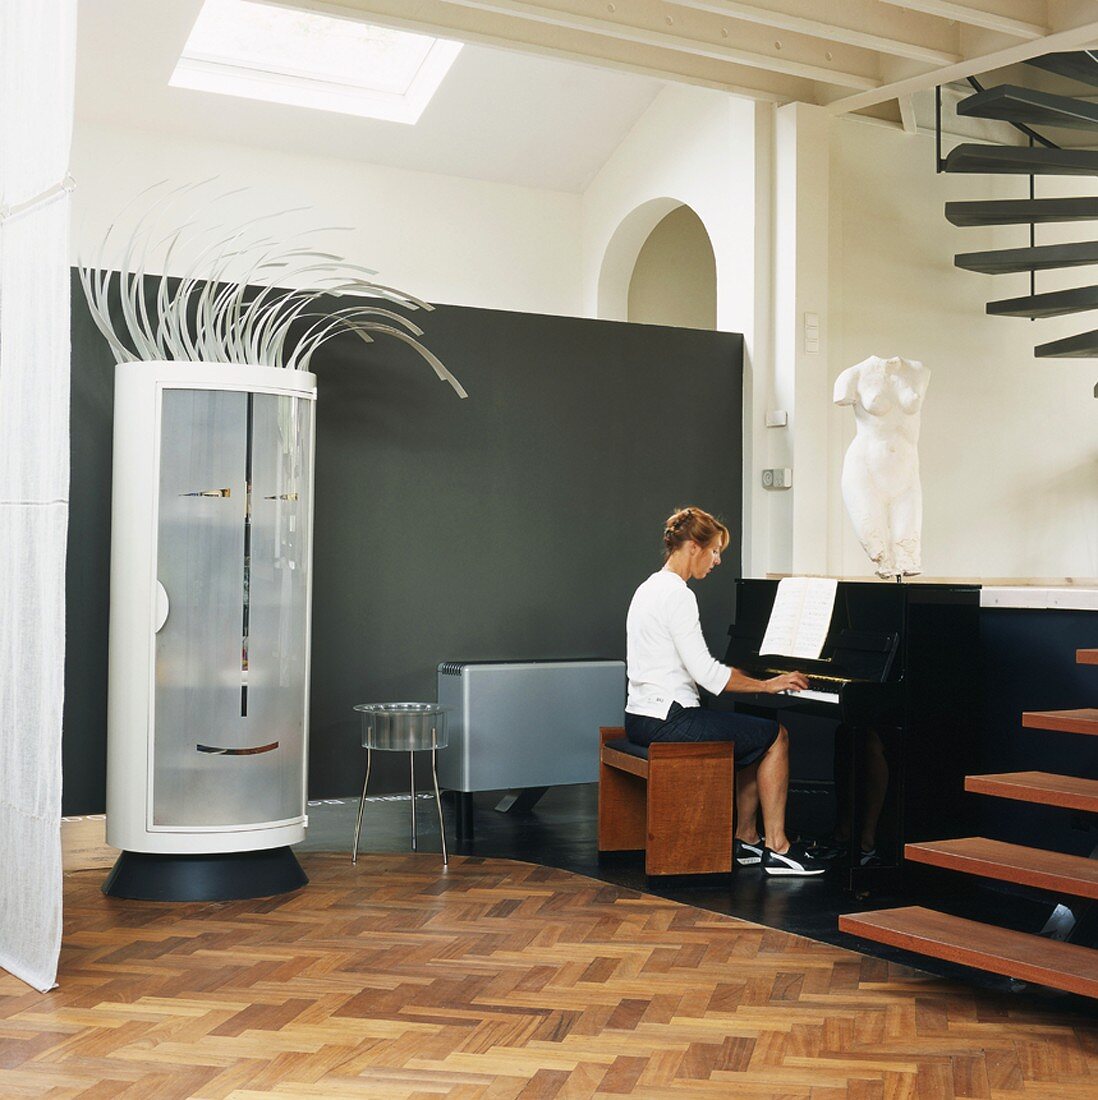 Witziger, runder Schrank mit stilisiertem Gesicht und Haaren neben einer Frau am Klavier in Loftwohnung mit offener Treppe